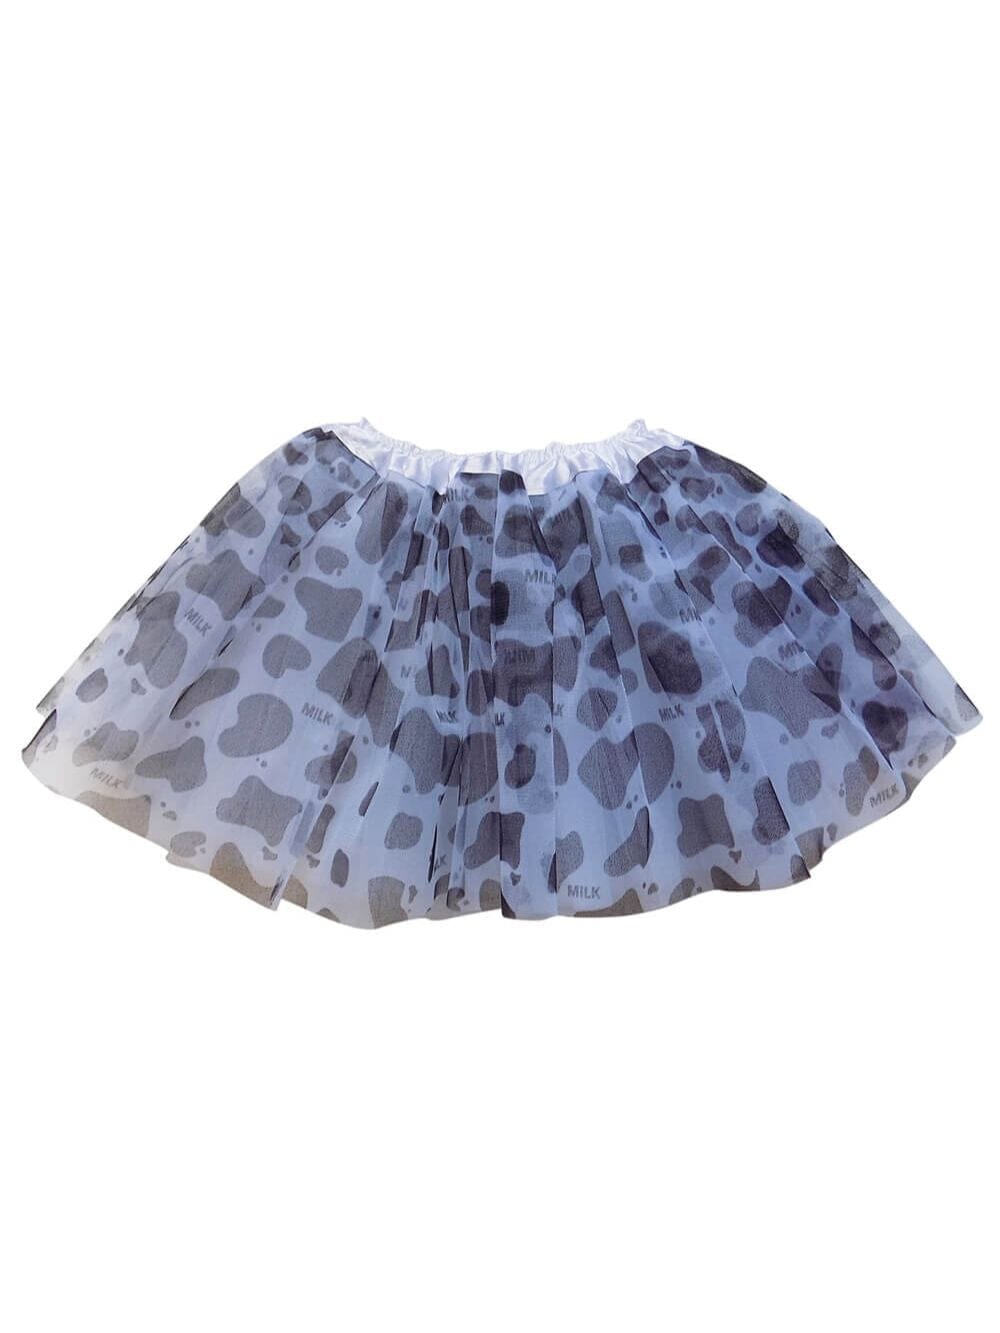 Cow Tutu Skirt - Kids Size 3-Layer Tulle Basic Ballet Dance Costume Tutus for Girls - Sydney So Sweet